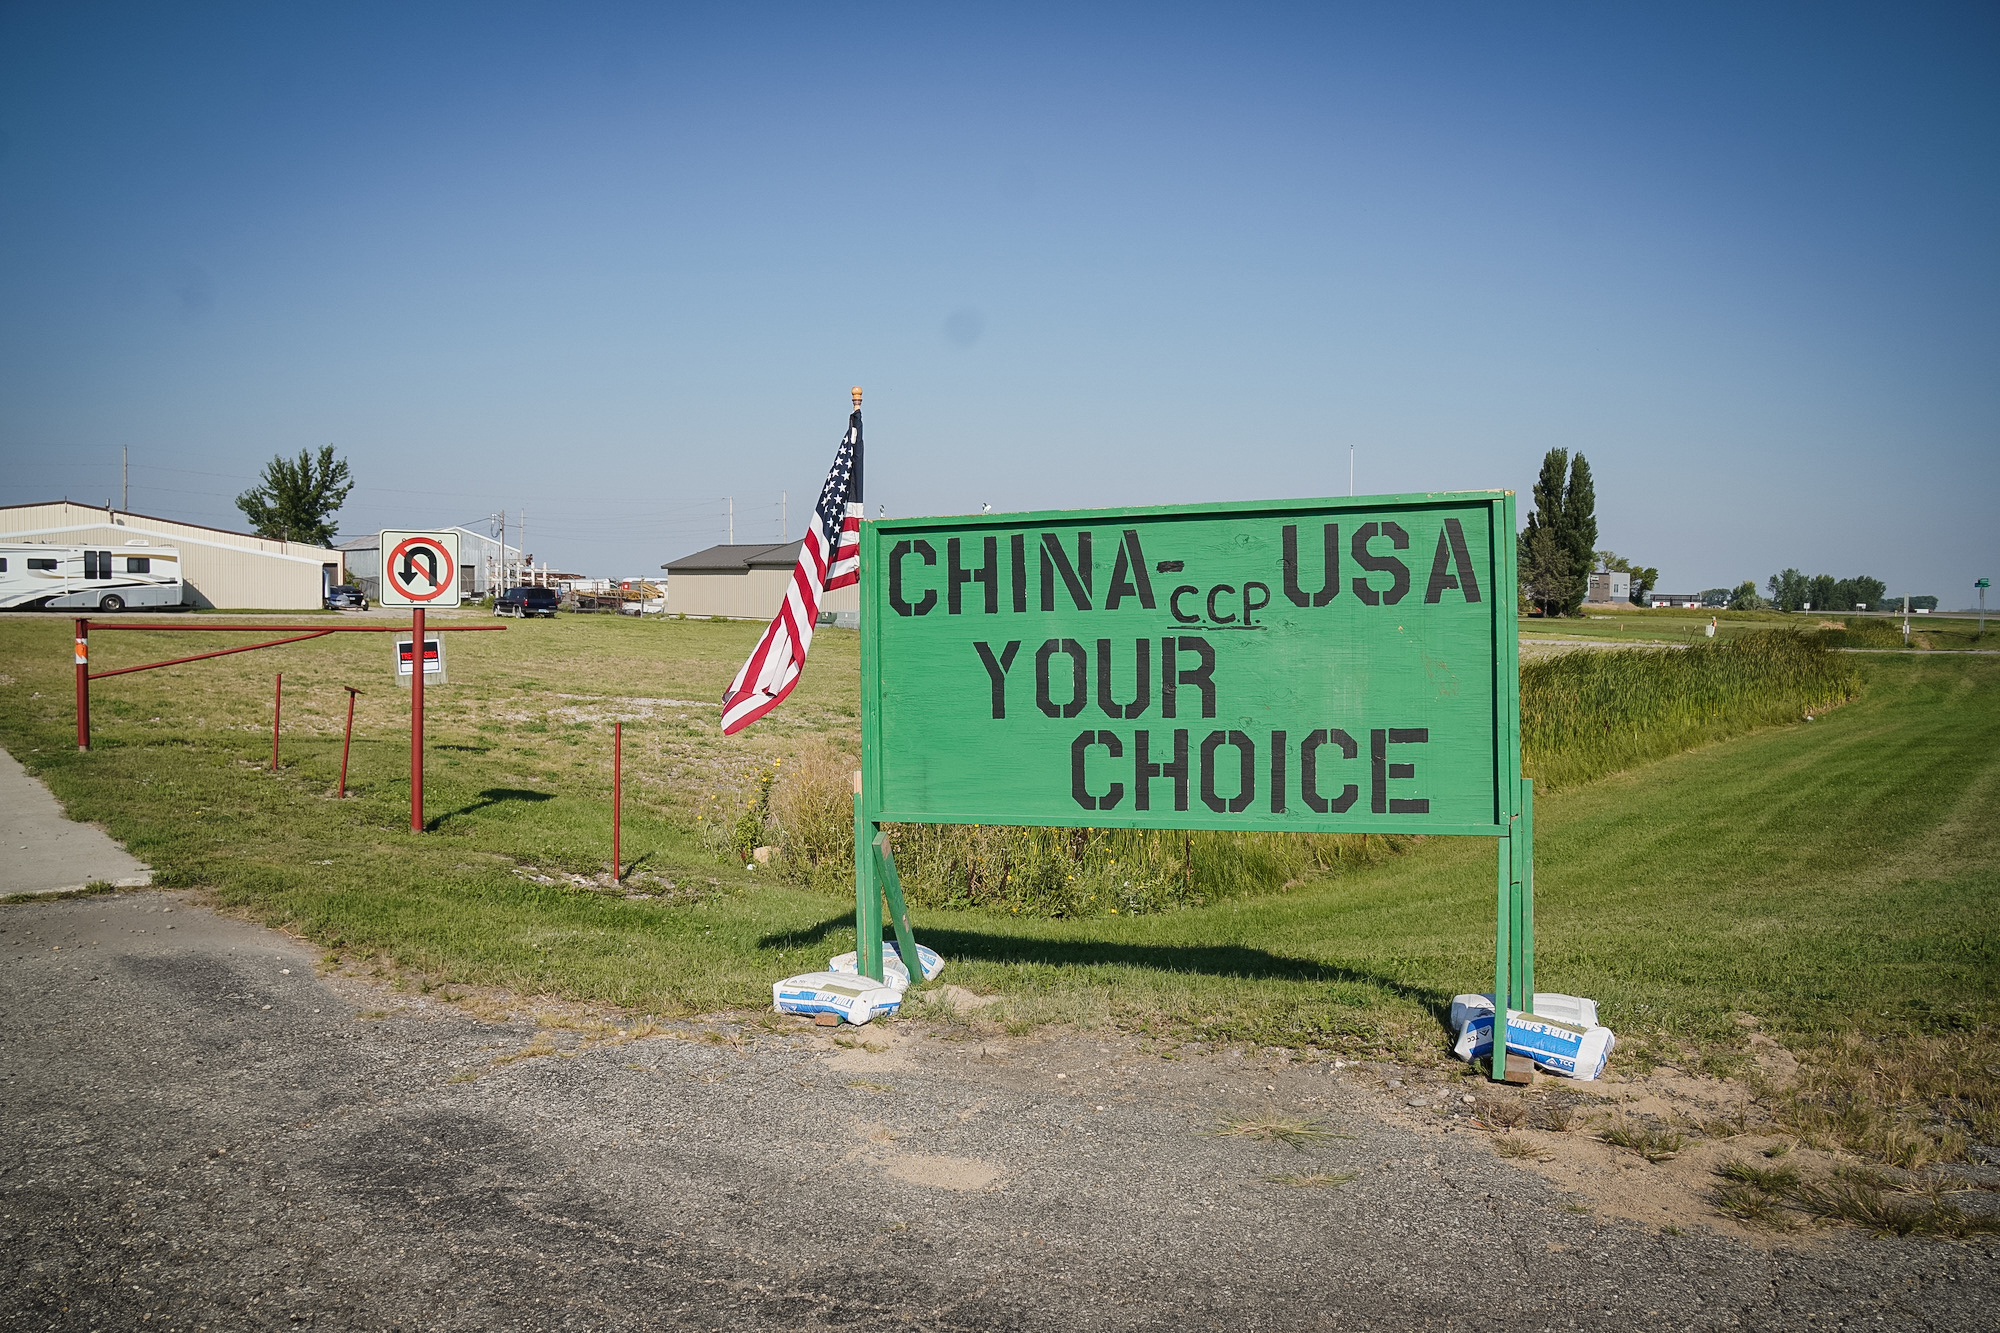 Một tấm biển phản đối một nhà máy bắp liên kết với Trung Quốc nằm gần 370 mẫu Anh (khoảng 150 hecta) mới được thành phố sáp nhập cho dự án, ở Grand Forks, North Dakota, trong ảnh tài liệu này. (Ảnh: Allan Stein/The Epoch Times)